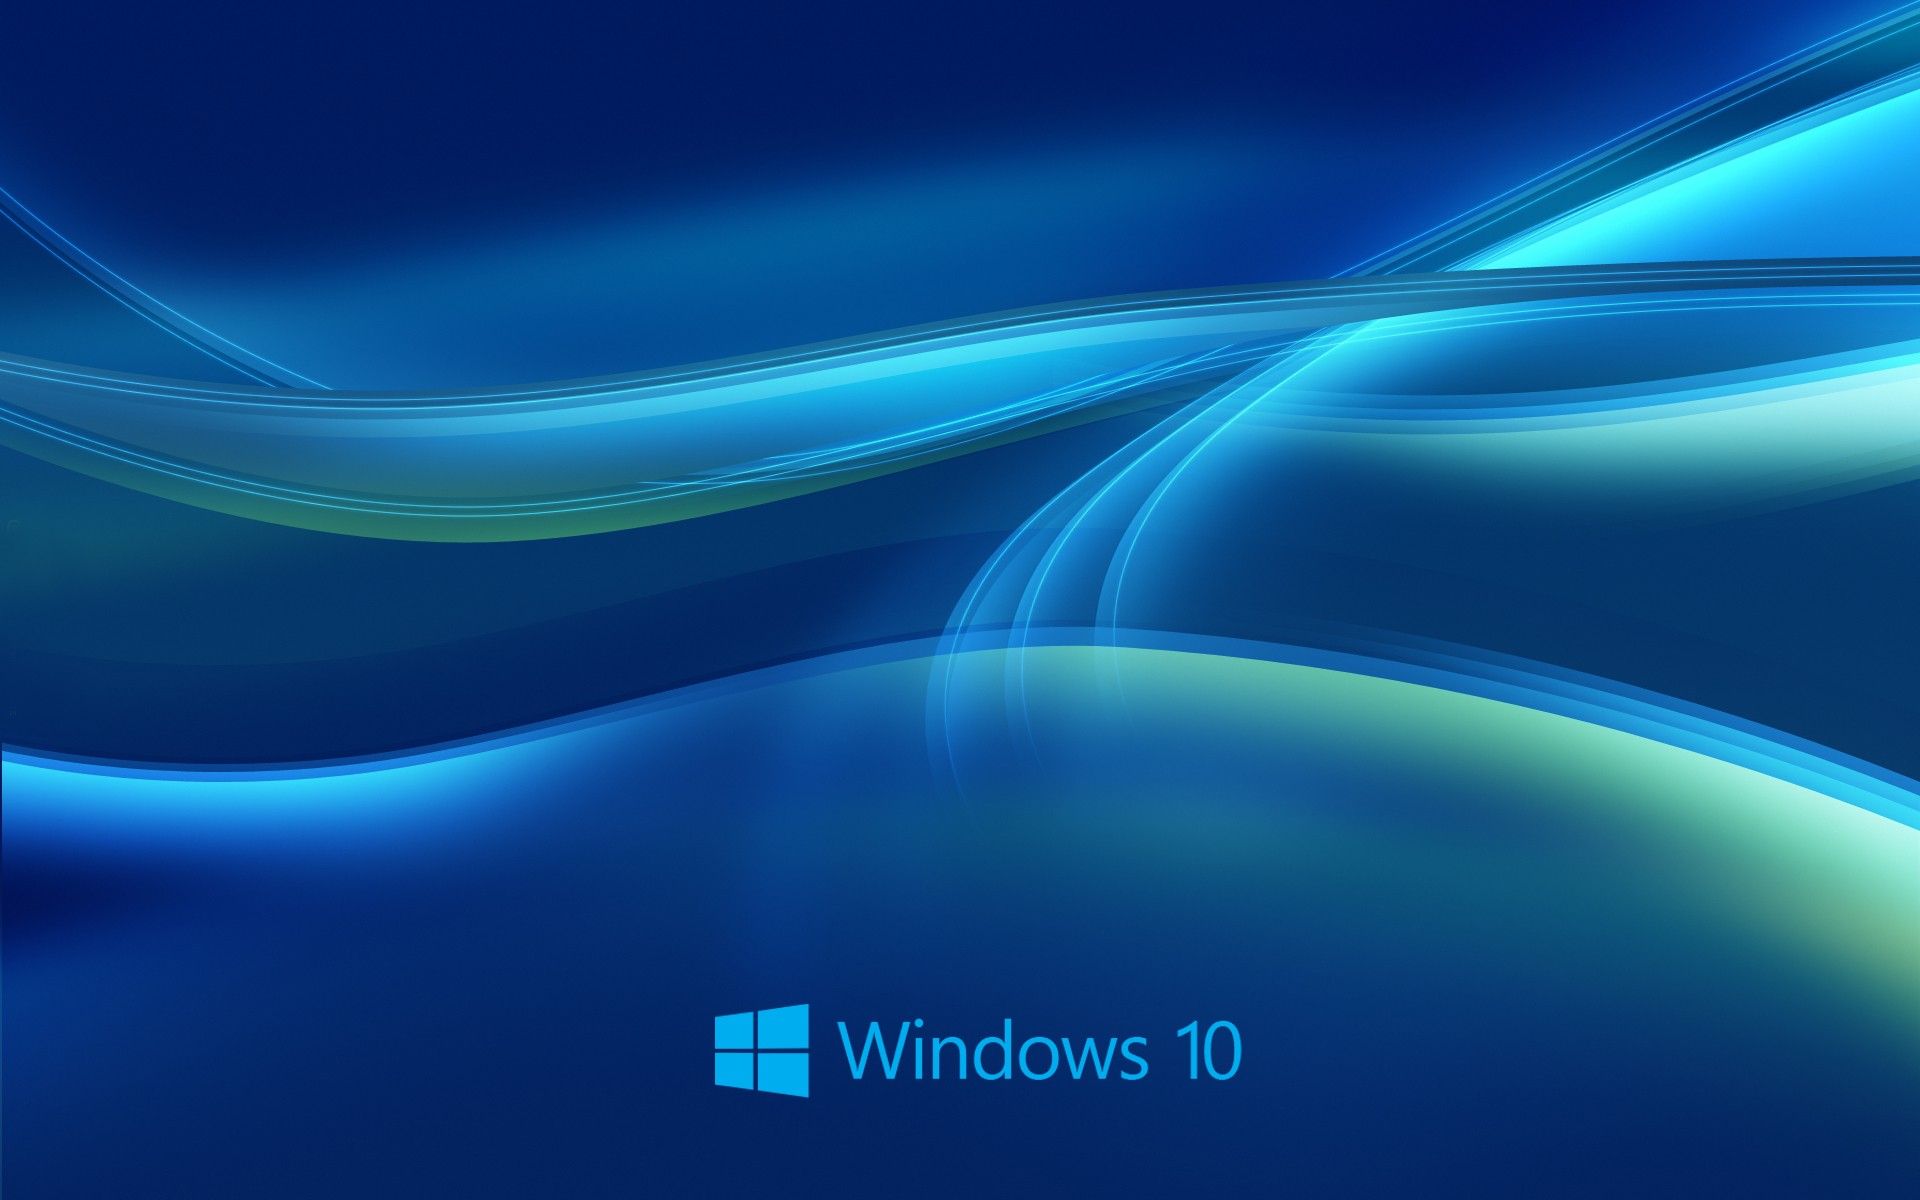 Windows Desktop Background: Cool Desktop Background For Windows 10